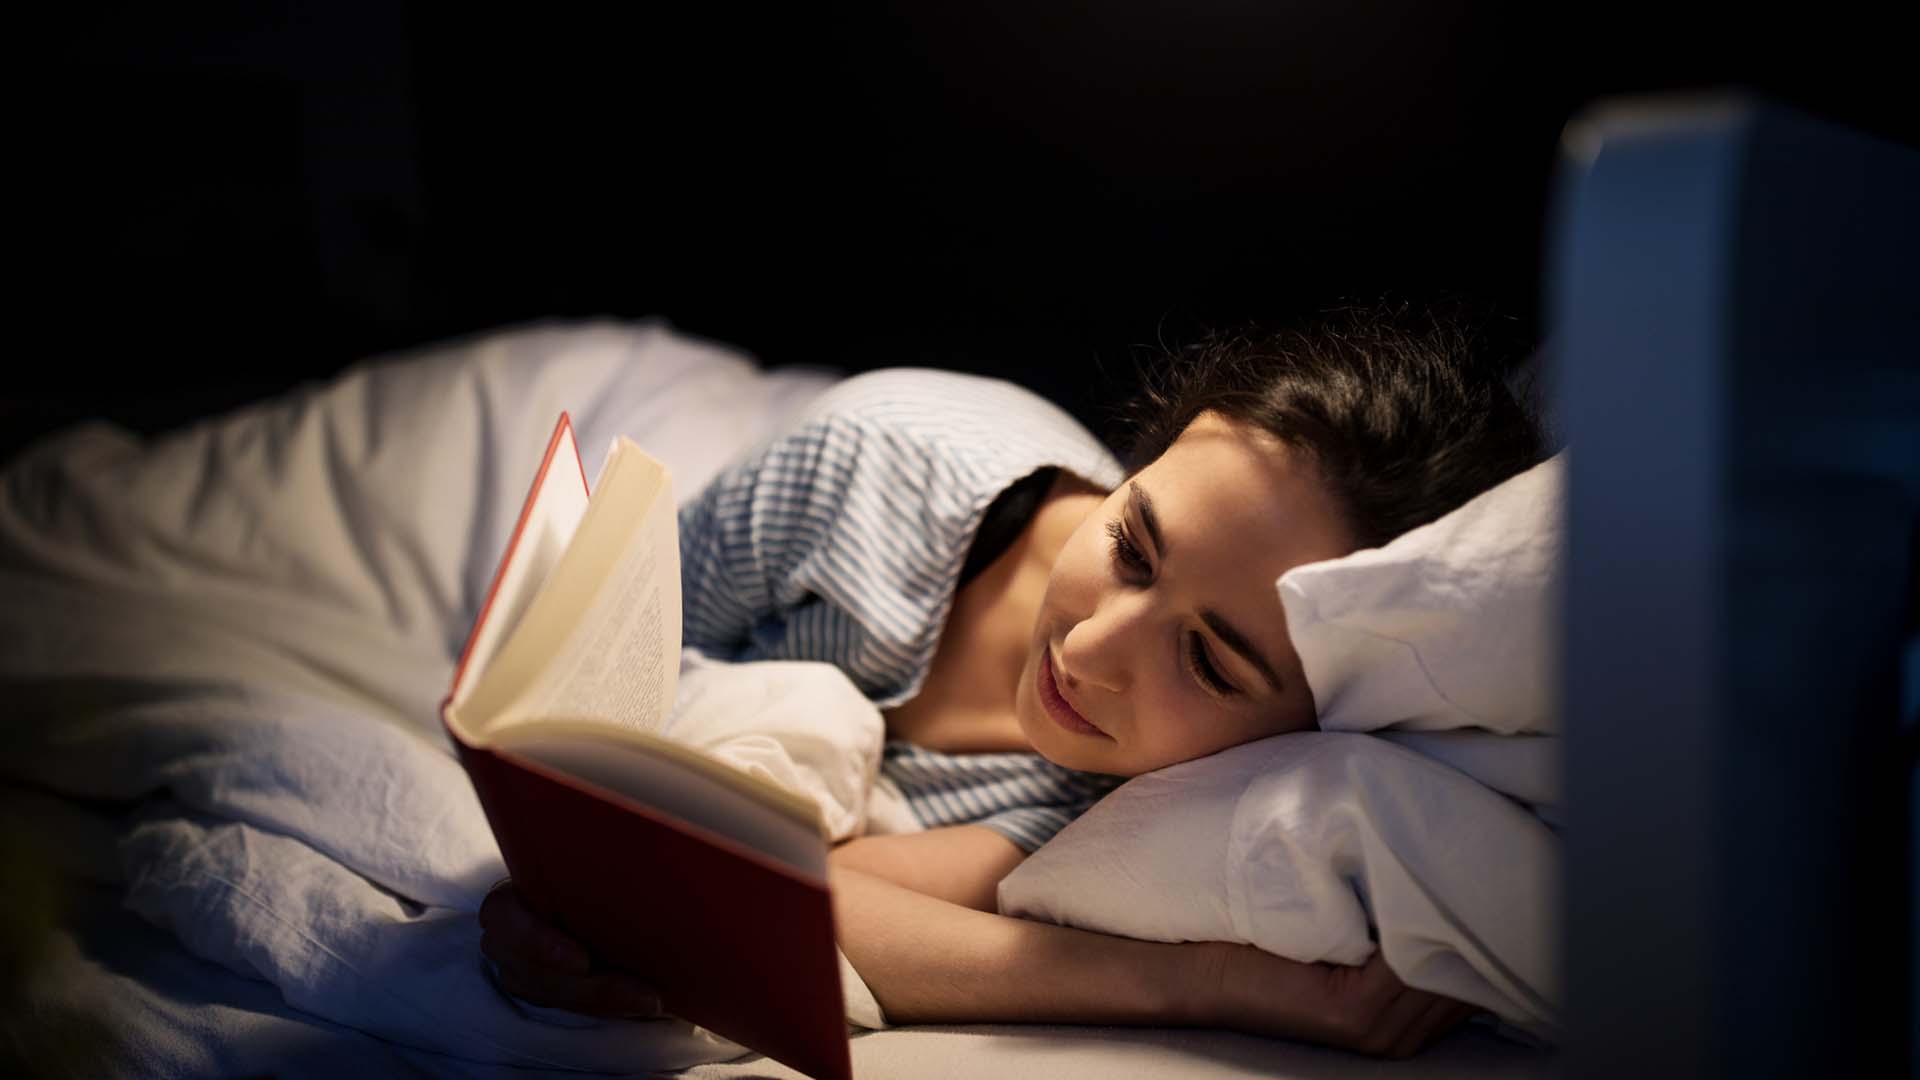 Leer un libro y evitar las pantallas antes de dormir ayuda a conciliar el sueño y combatir el insomnio.